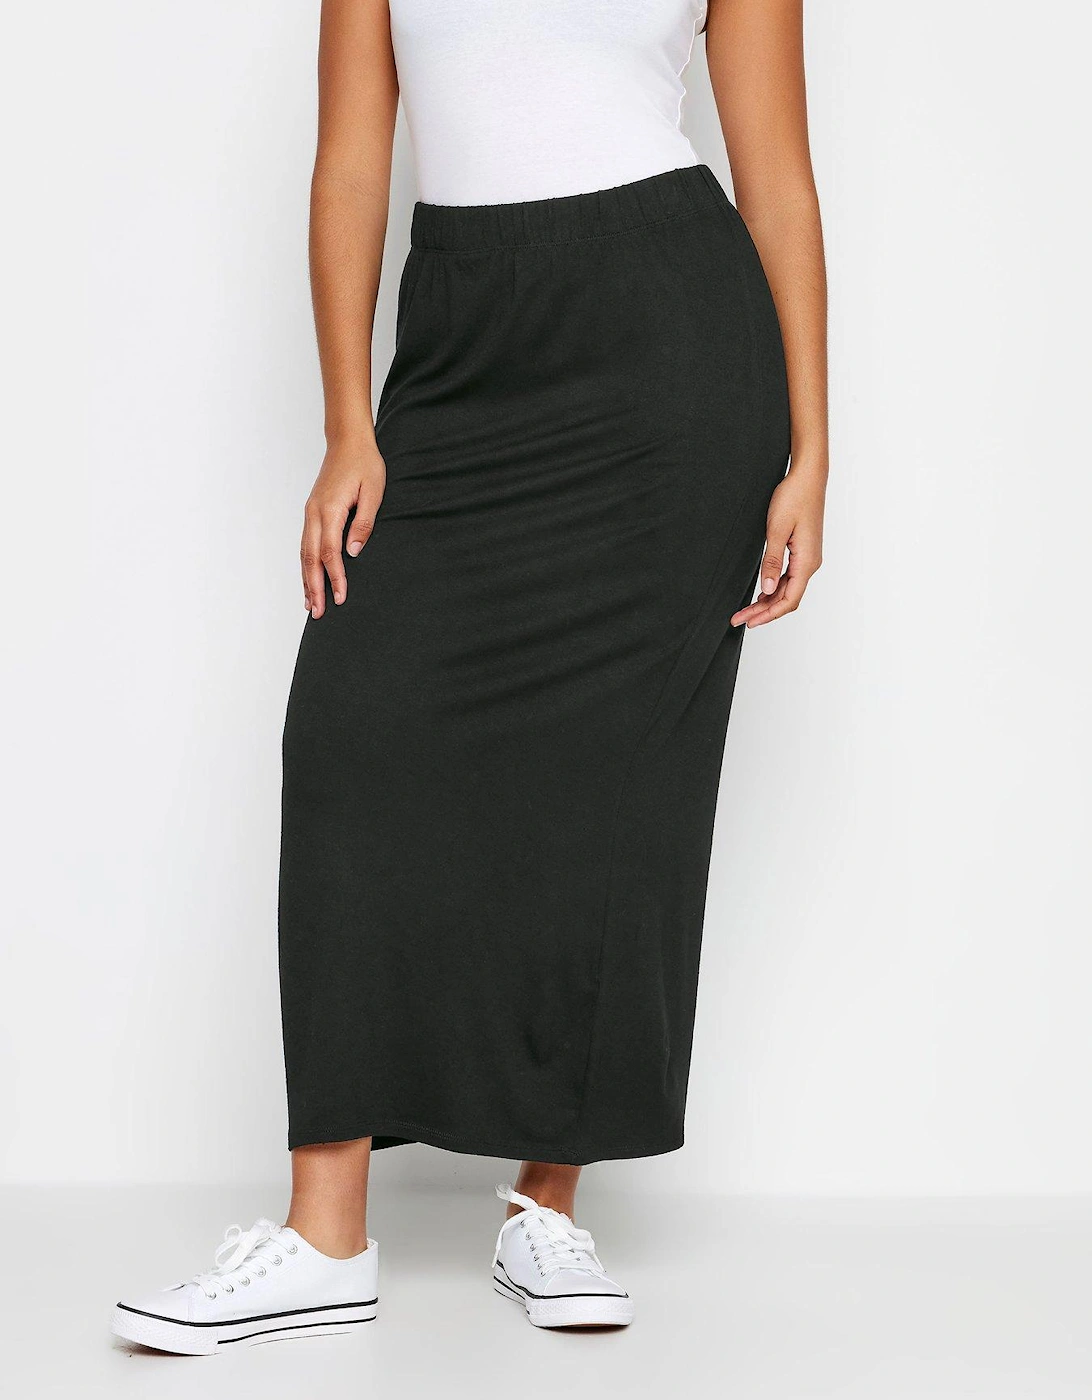 Petite Black Tube Maxi Skirt, 2 of 1